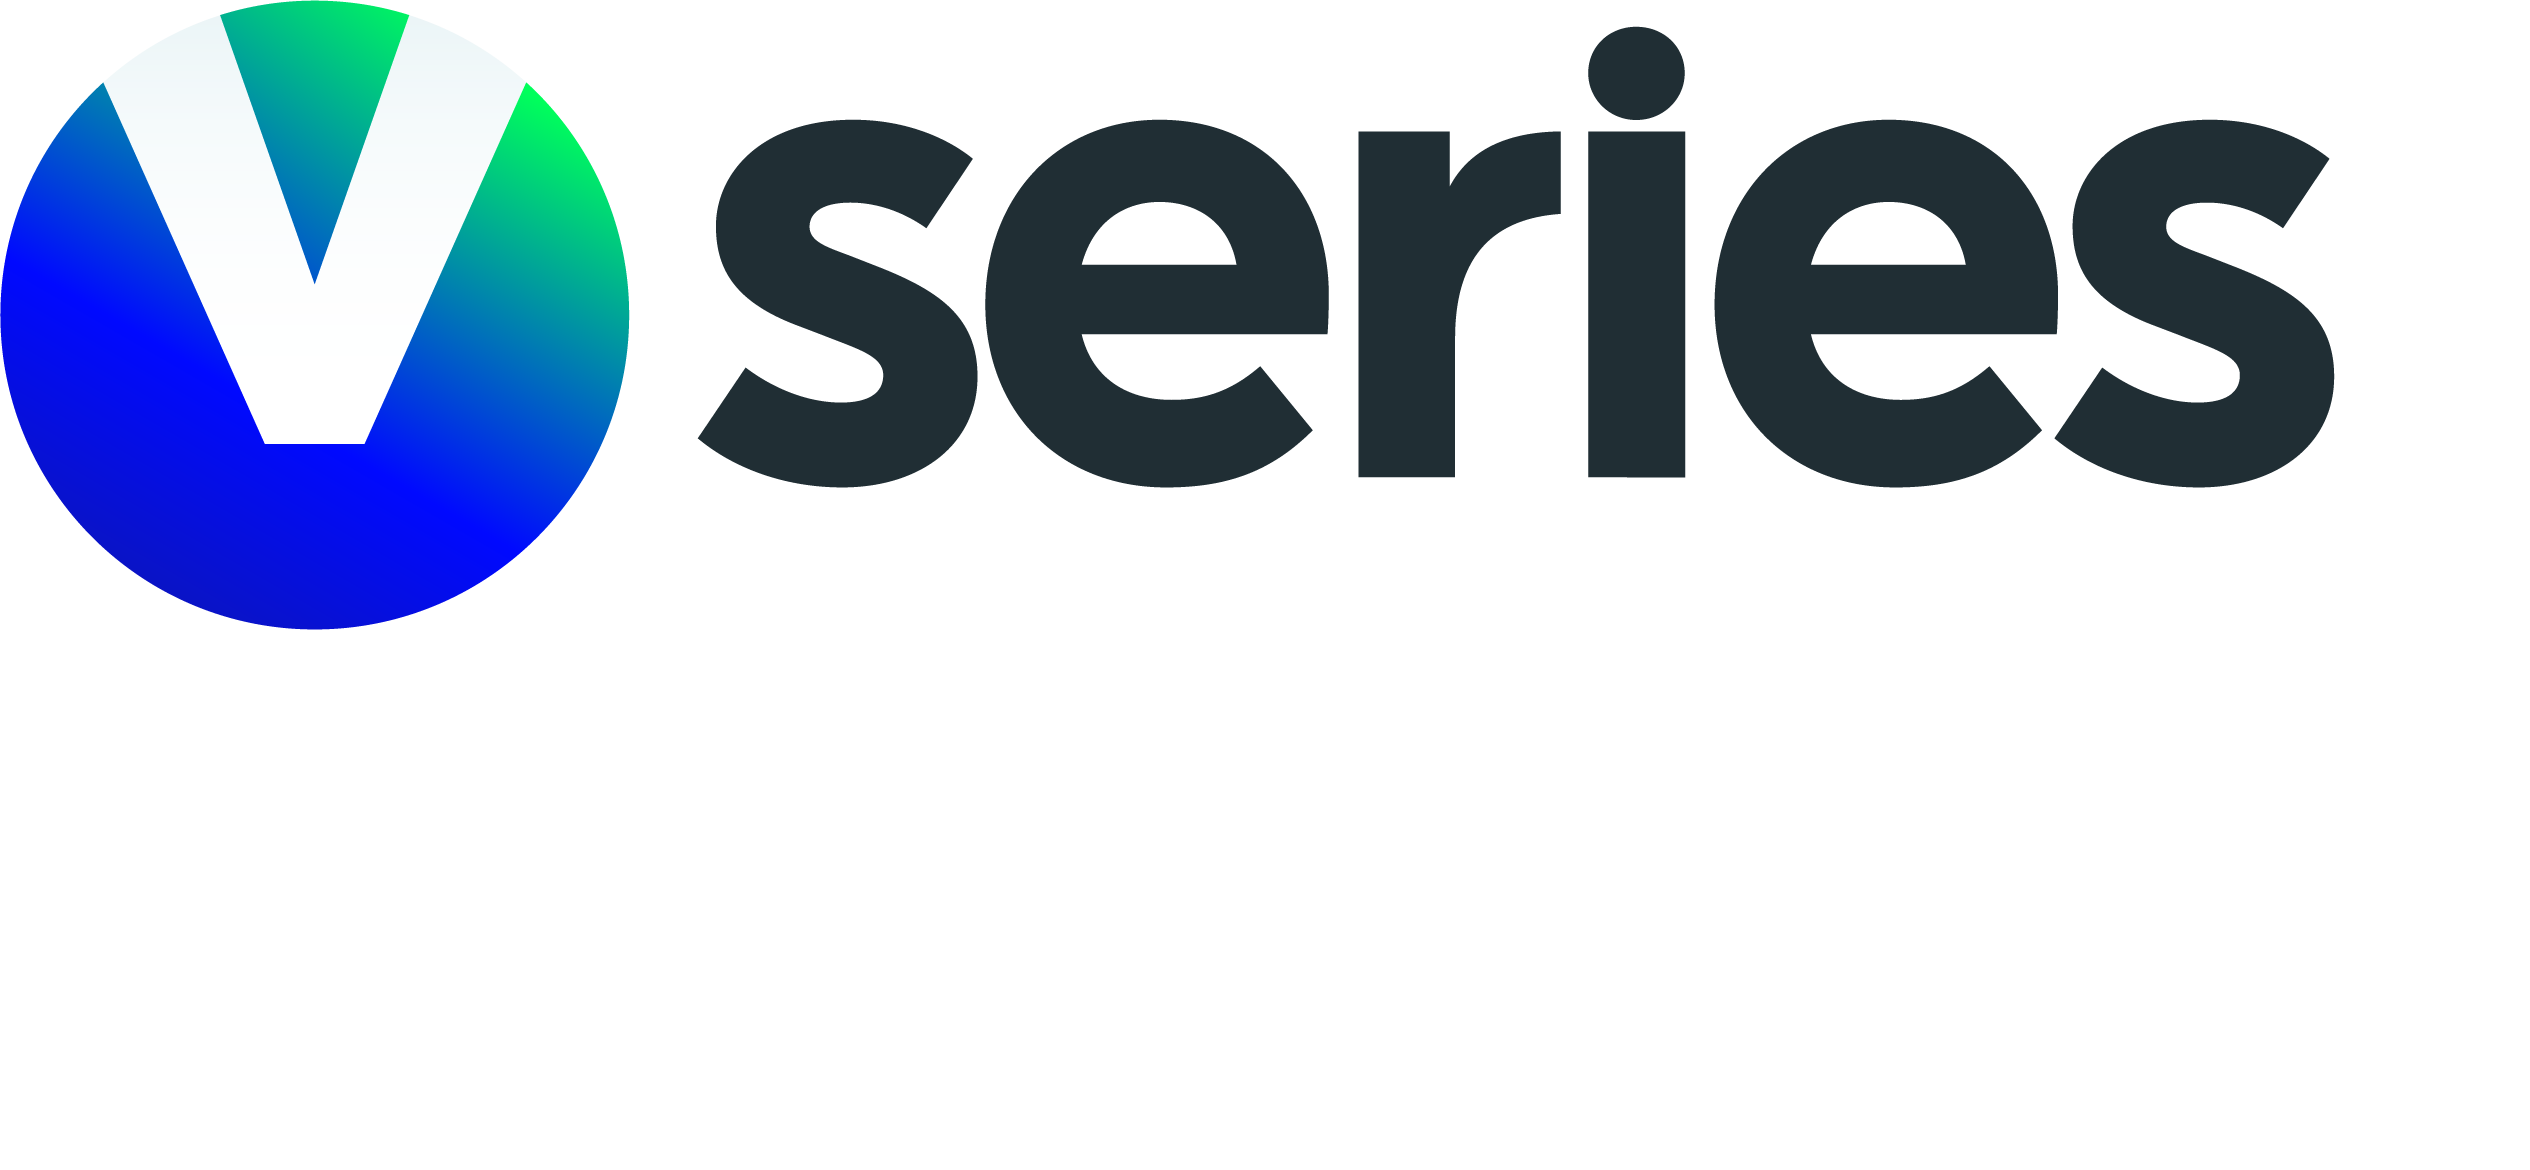 Viasat Series Norway